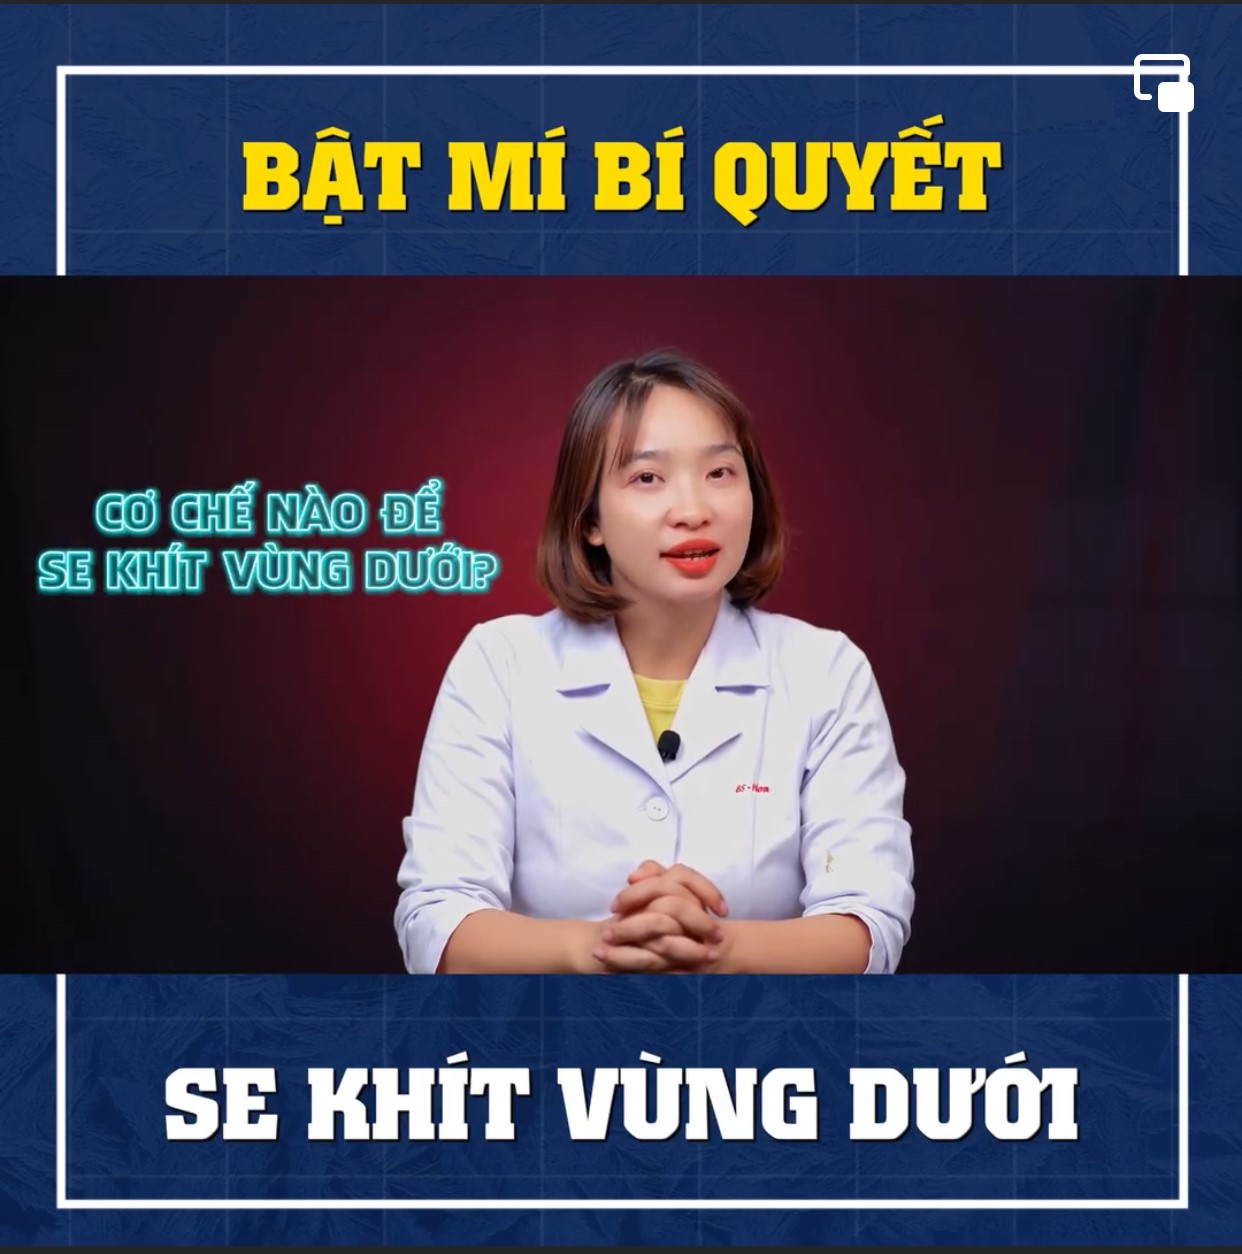 Bác sĩ Hoa: Sứ mệnh của nữ bác sĩ nội tiết vượt xa chuyên môn - ảnh 2